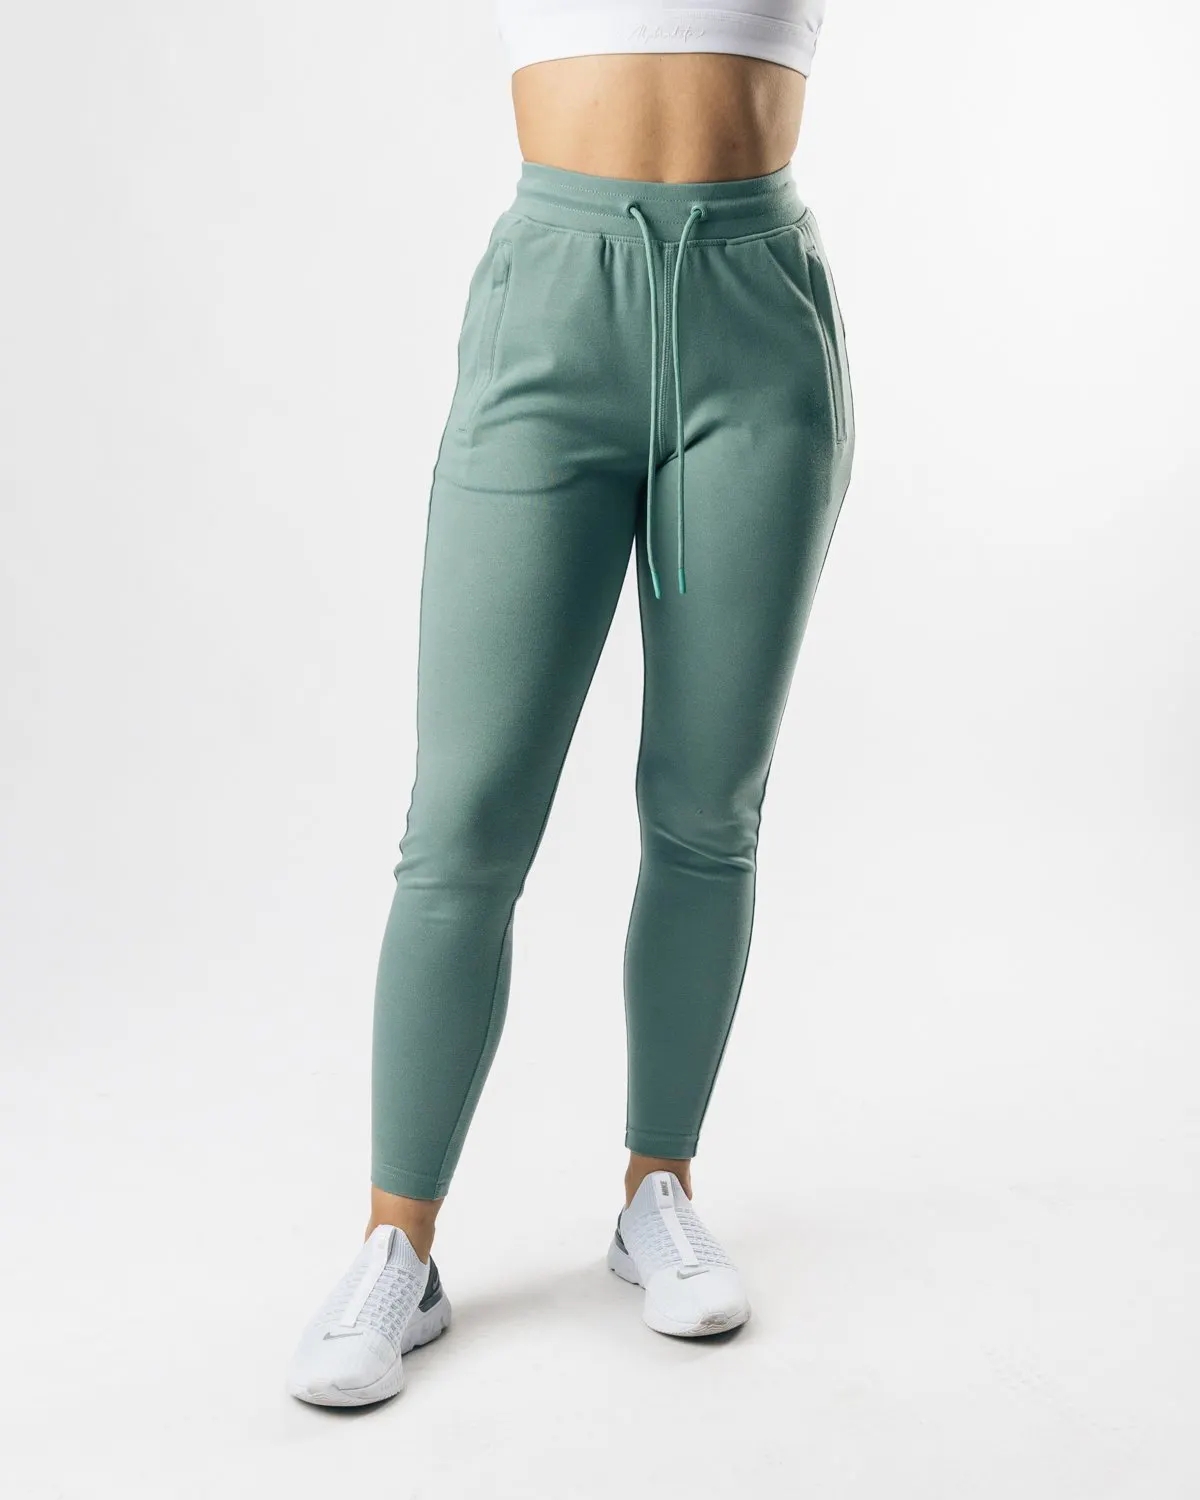 Wholesale women body shaper women's custom fit slim fit gym sportswear athlete joggers pants